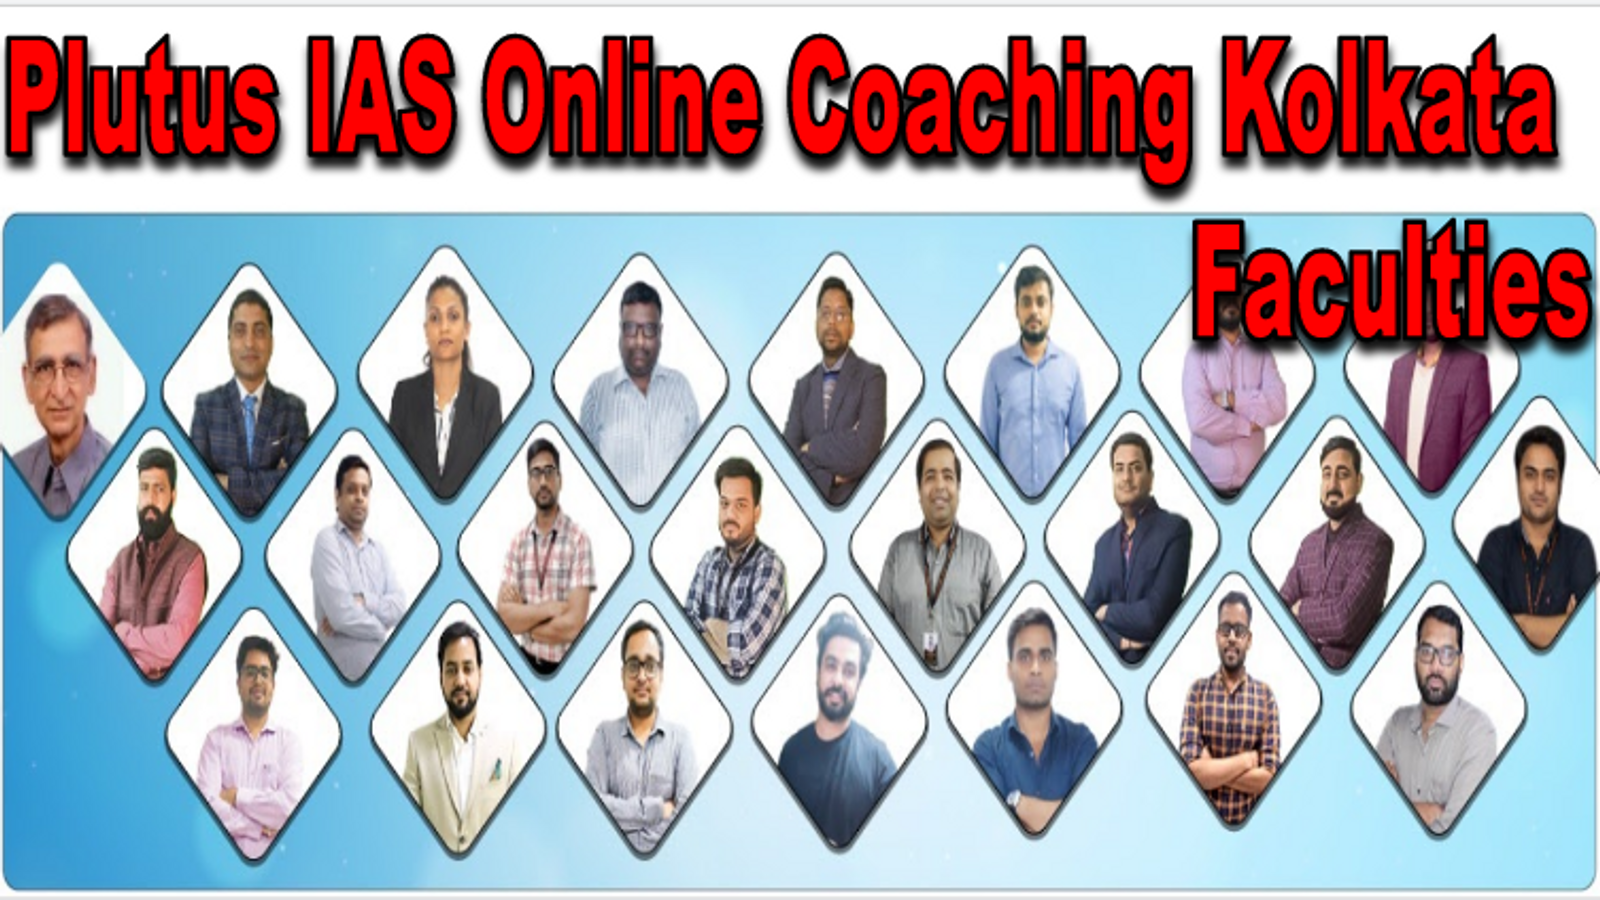 Plutus IAS Online Coaching Kolkata Faculties